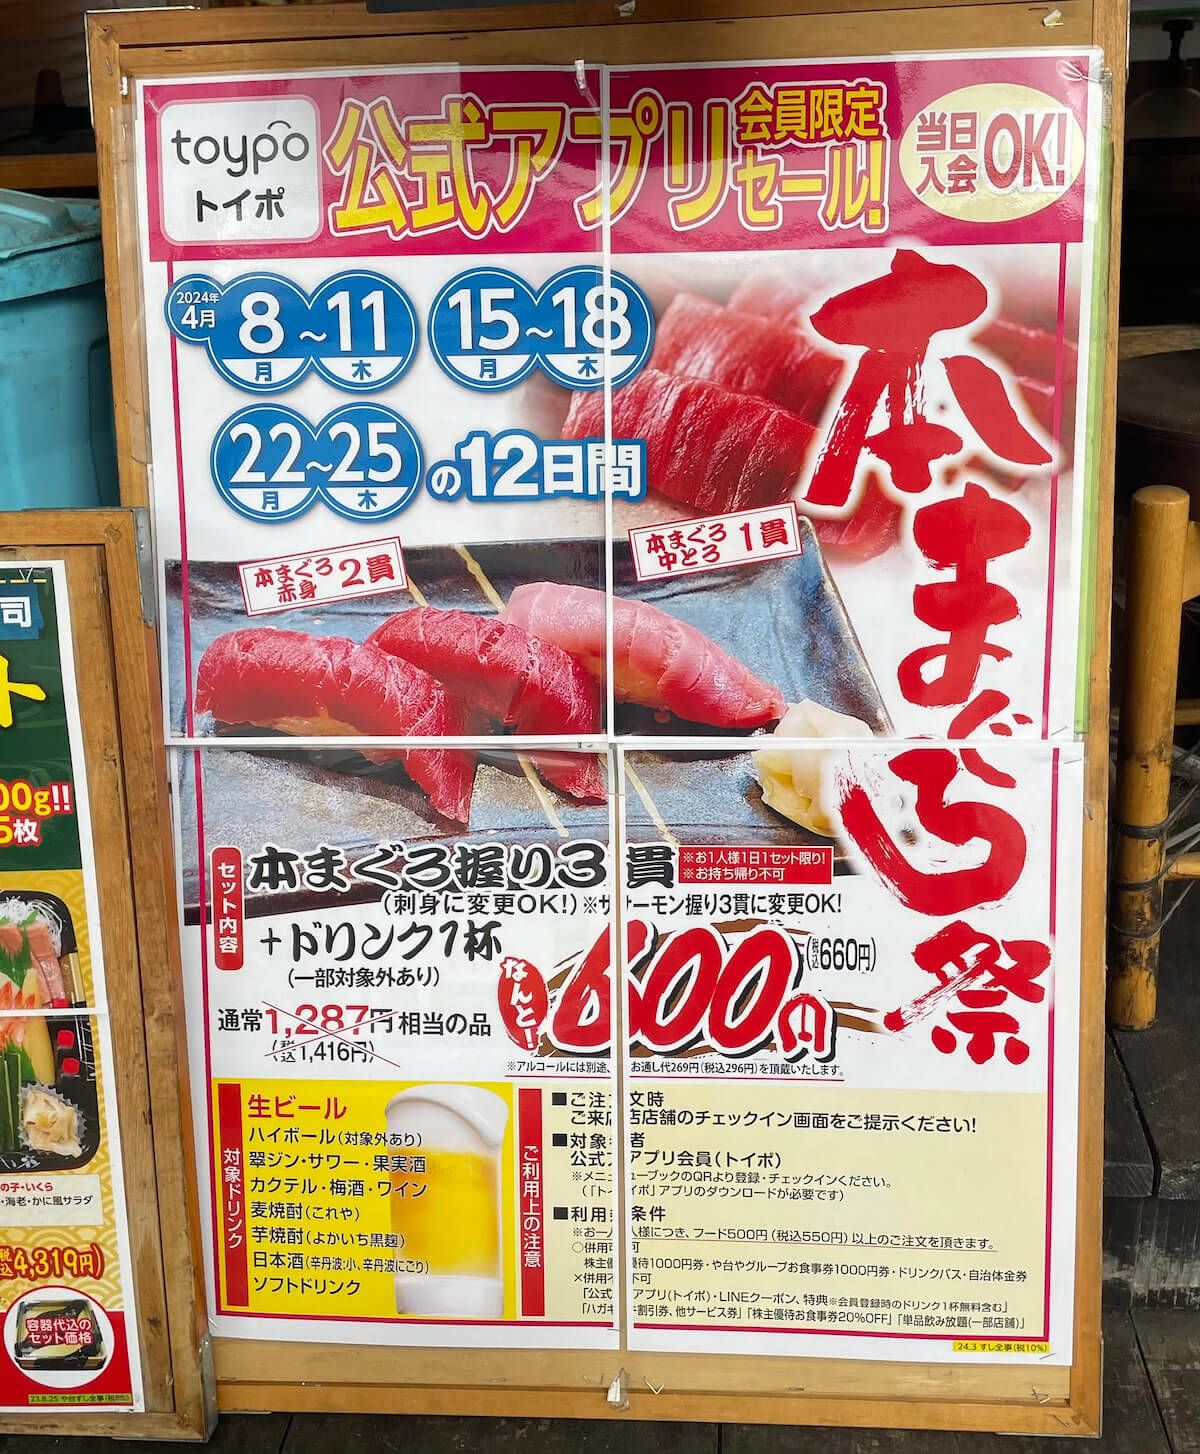 寿司居酒屋チェーン【や台ずし】、660円「本マグロ祭」食べてわかった絶好調の理由